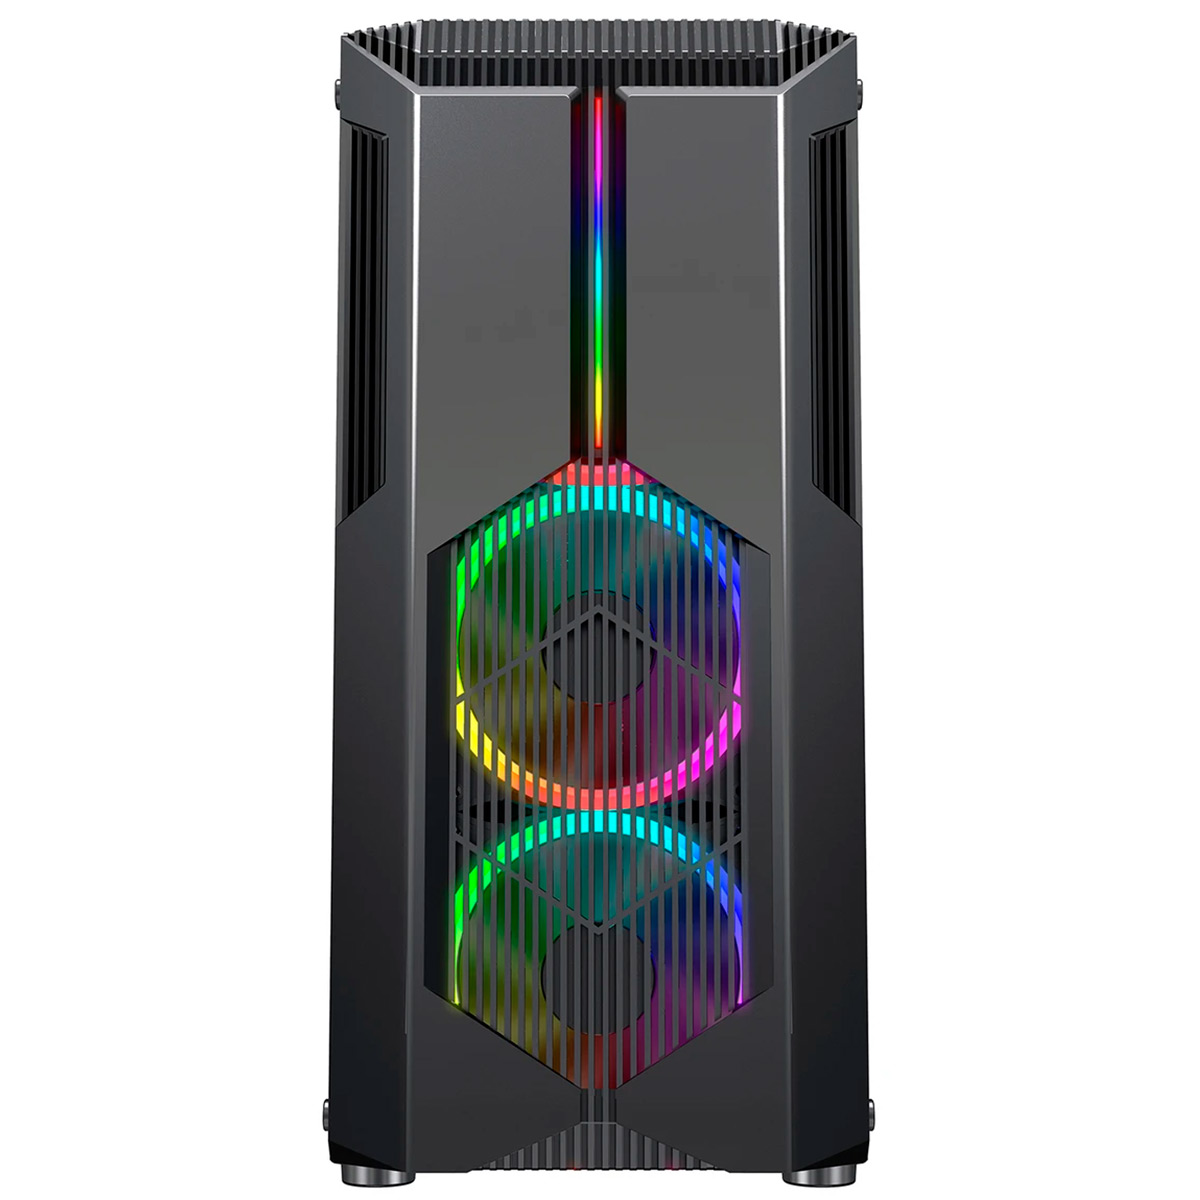 Gabinete Gamer Redragon Grindor - Lateral em Vidro Temperado - com Frontal Chroma e 2 Coolers RGB - USB 3.0 - GC-616